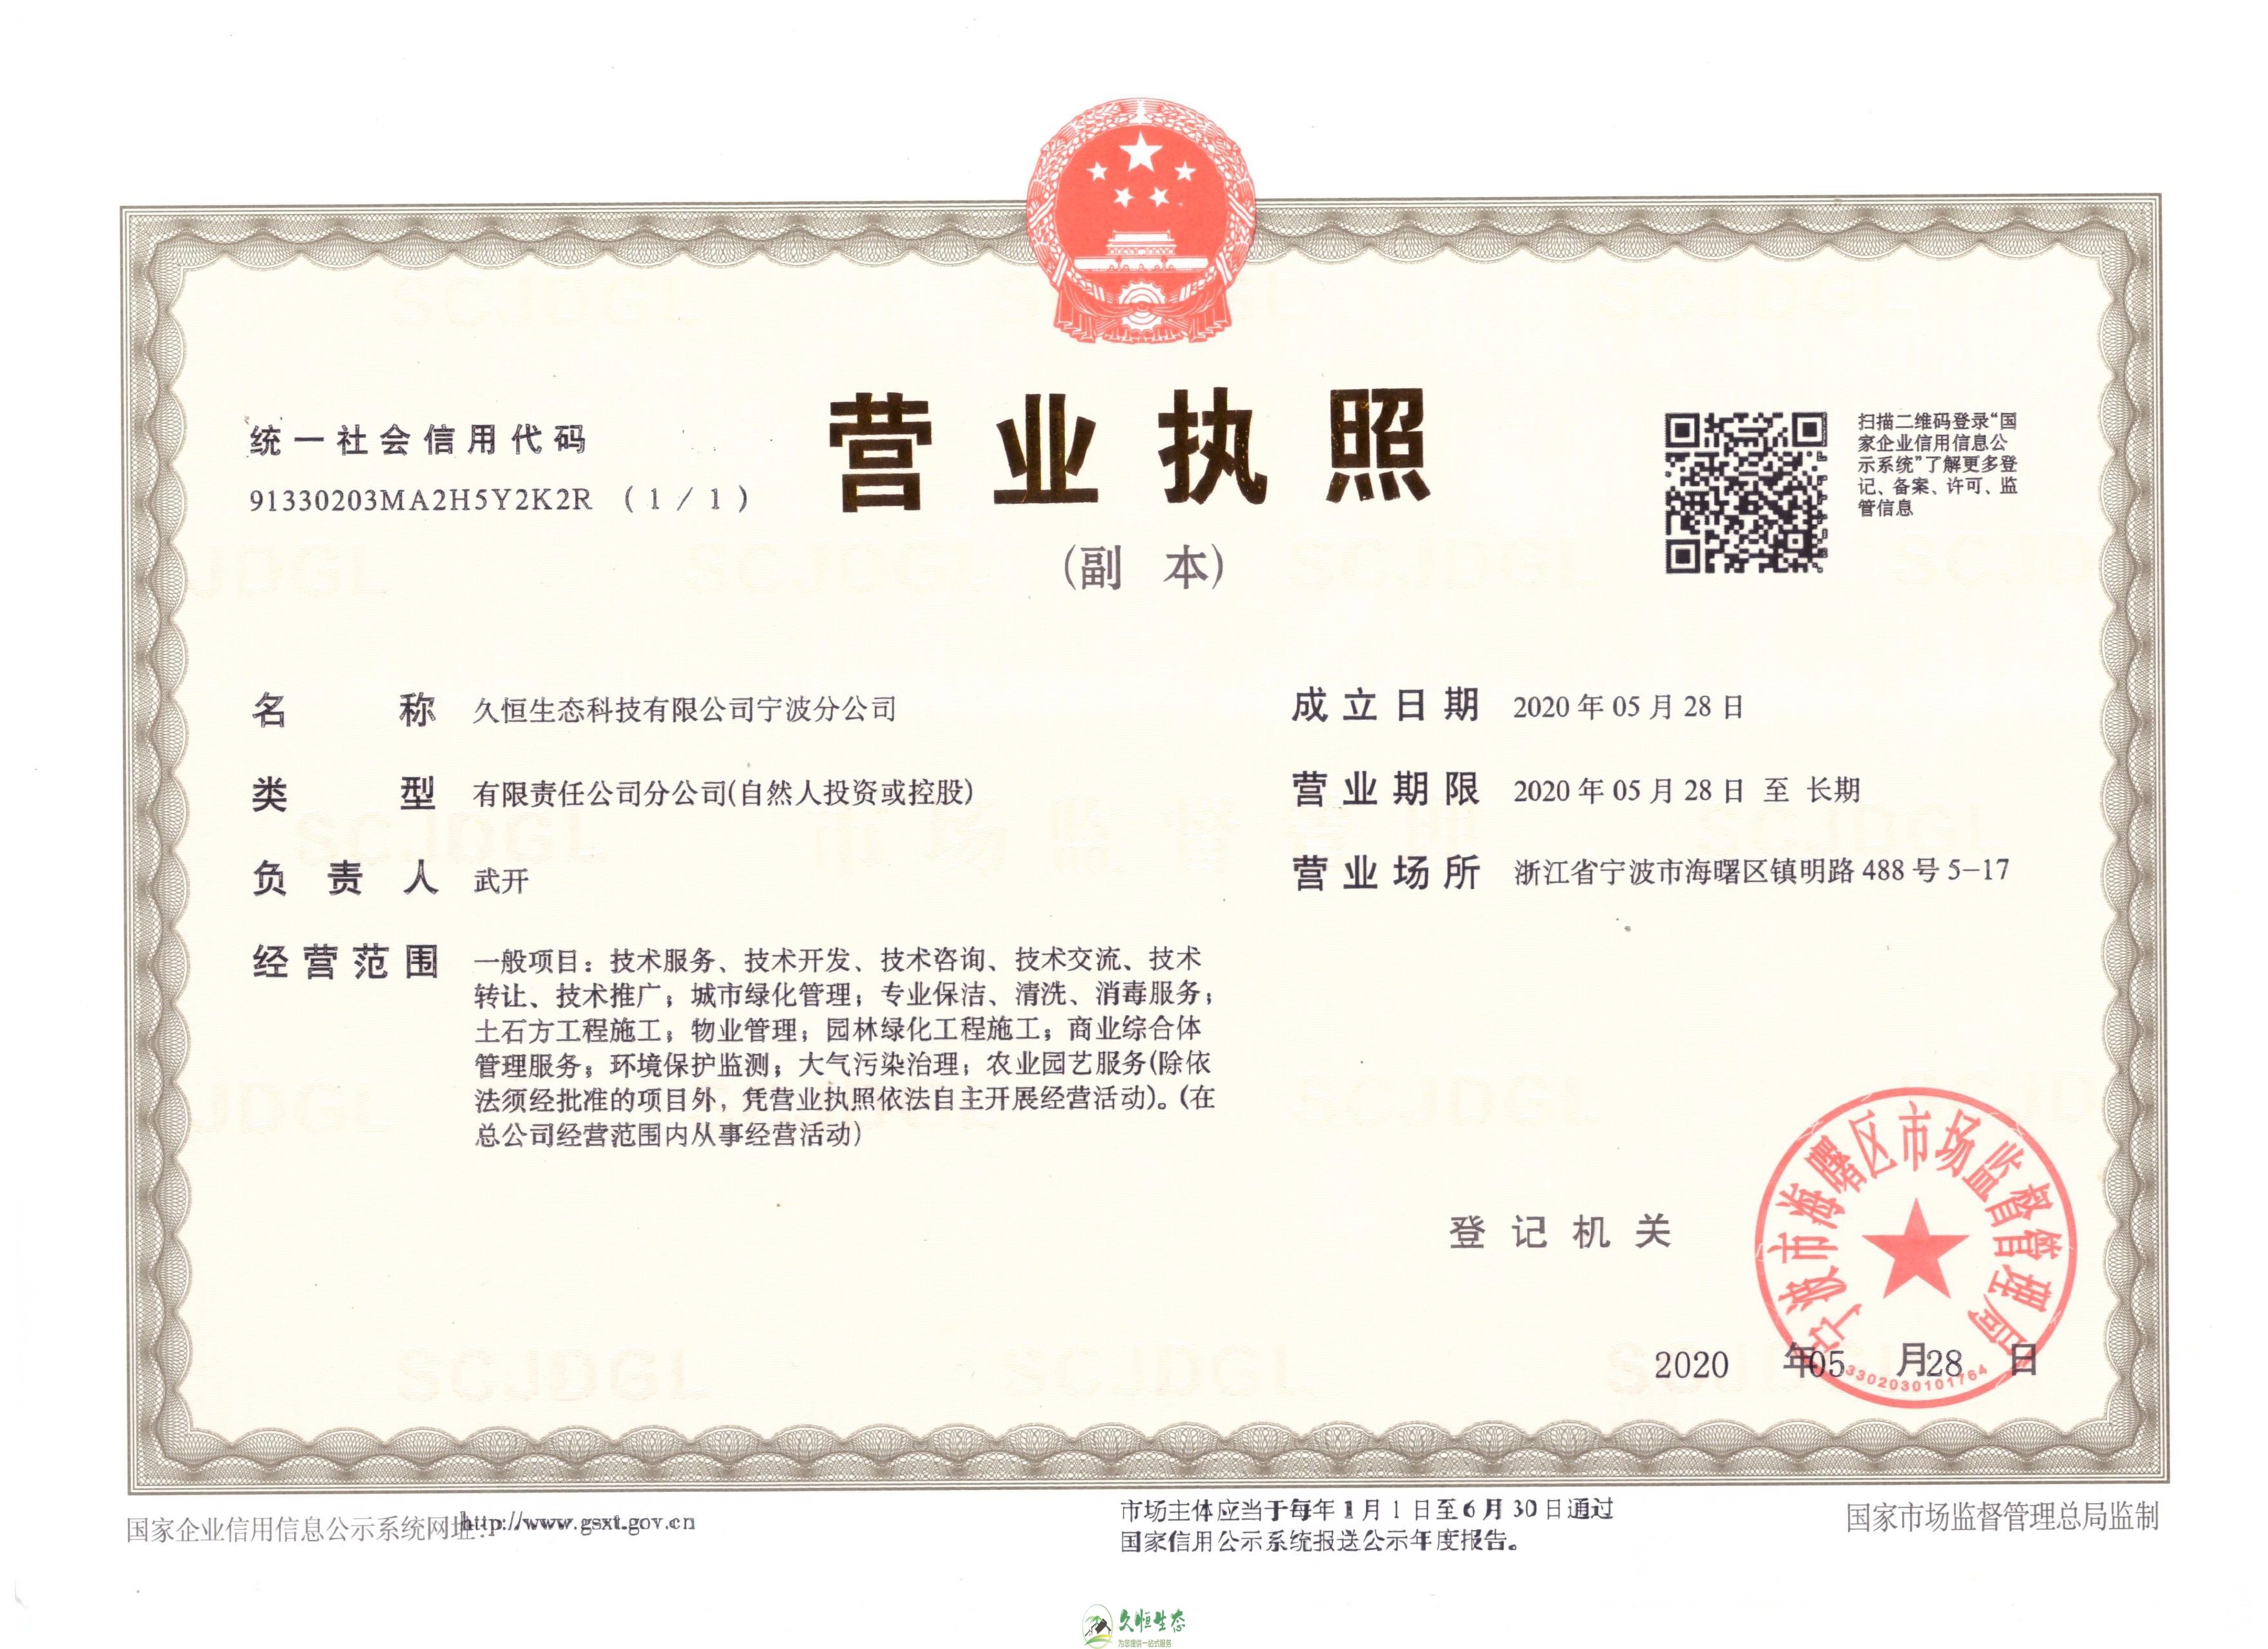 嘉兴桐乡久恒生态宁波分公司2020年5月28日成立